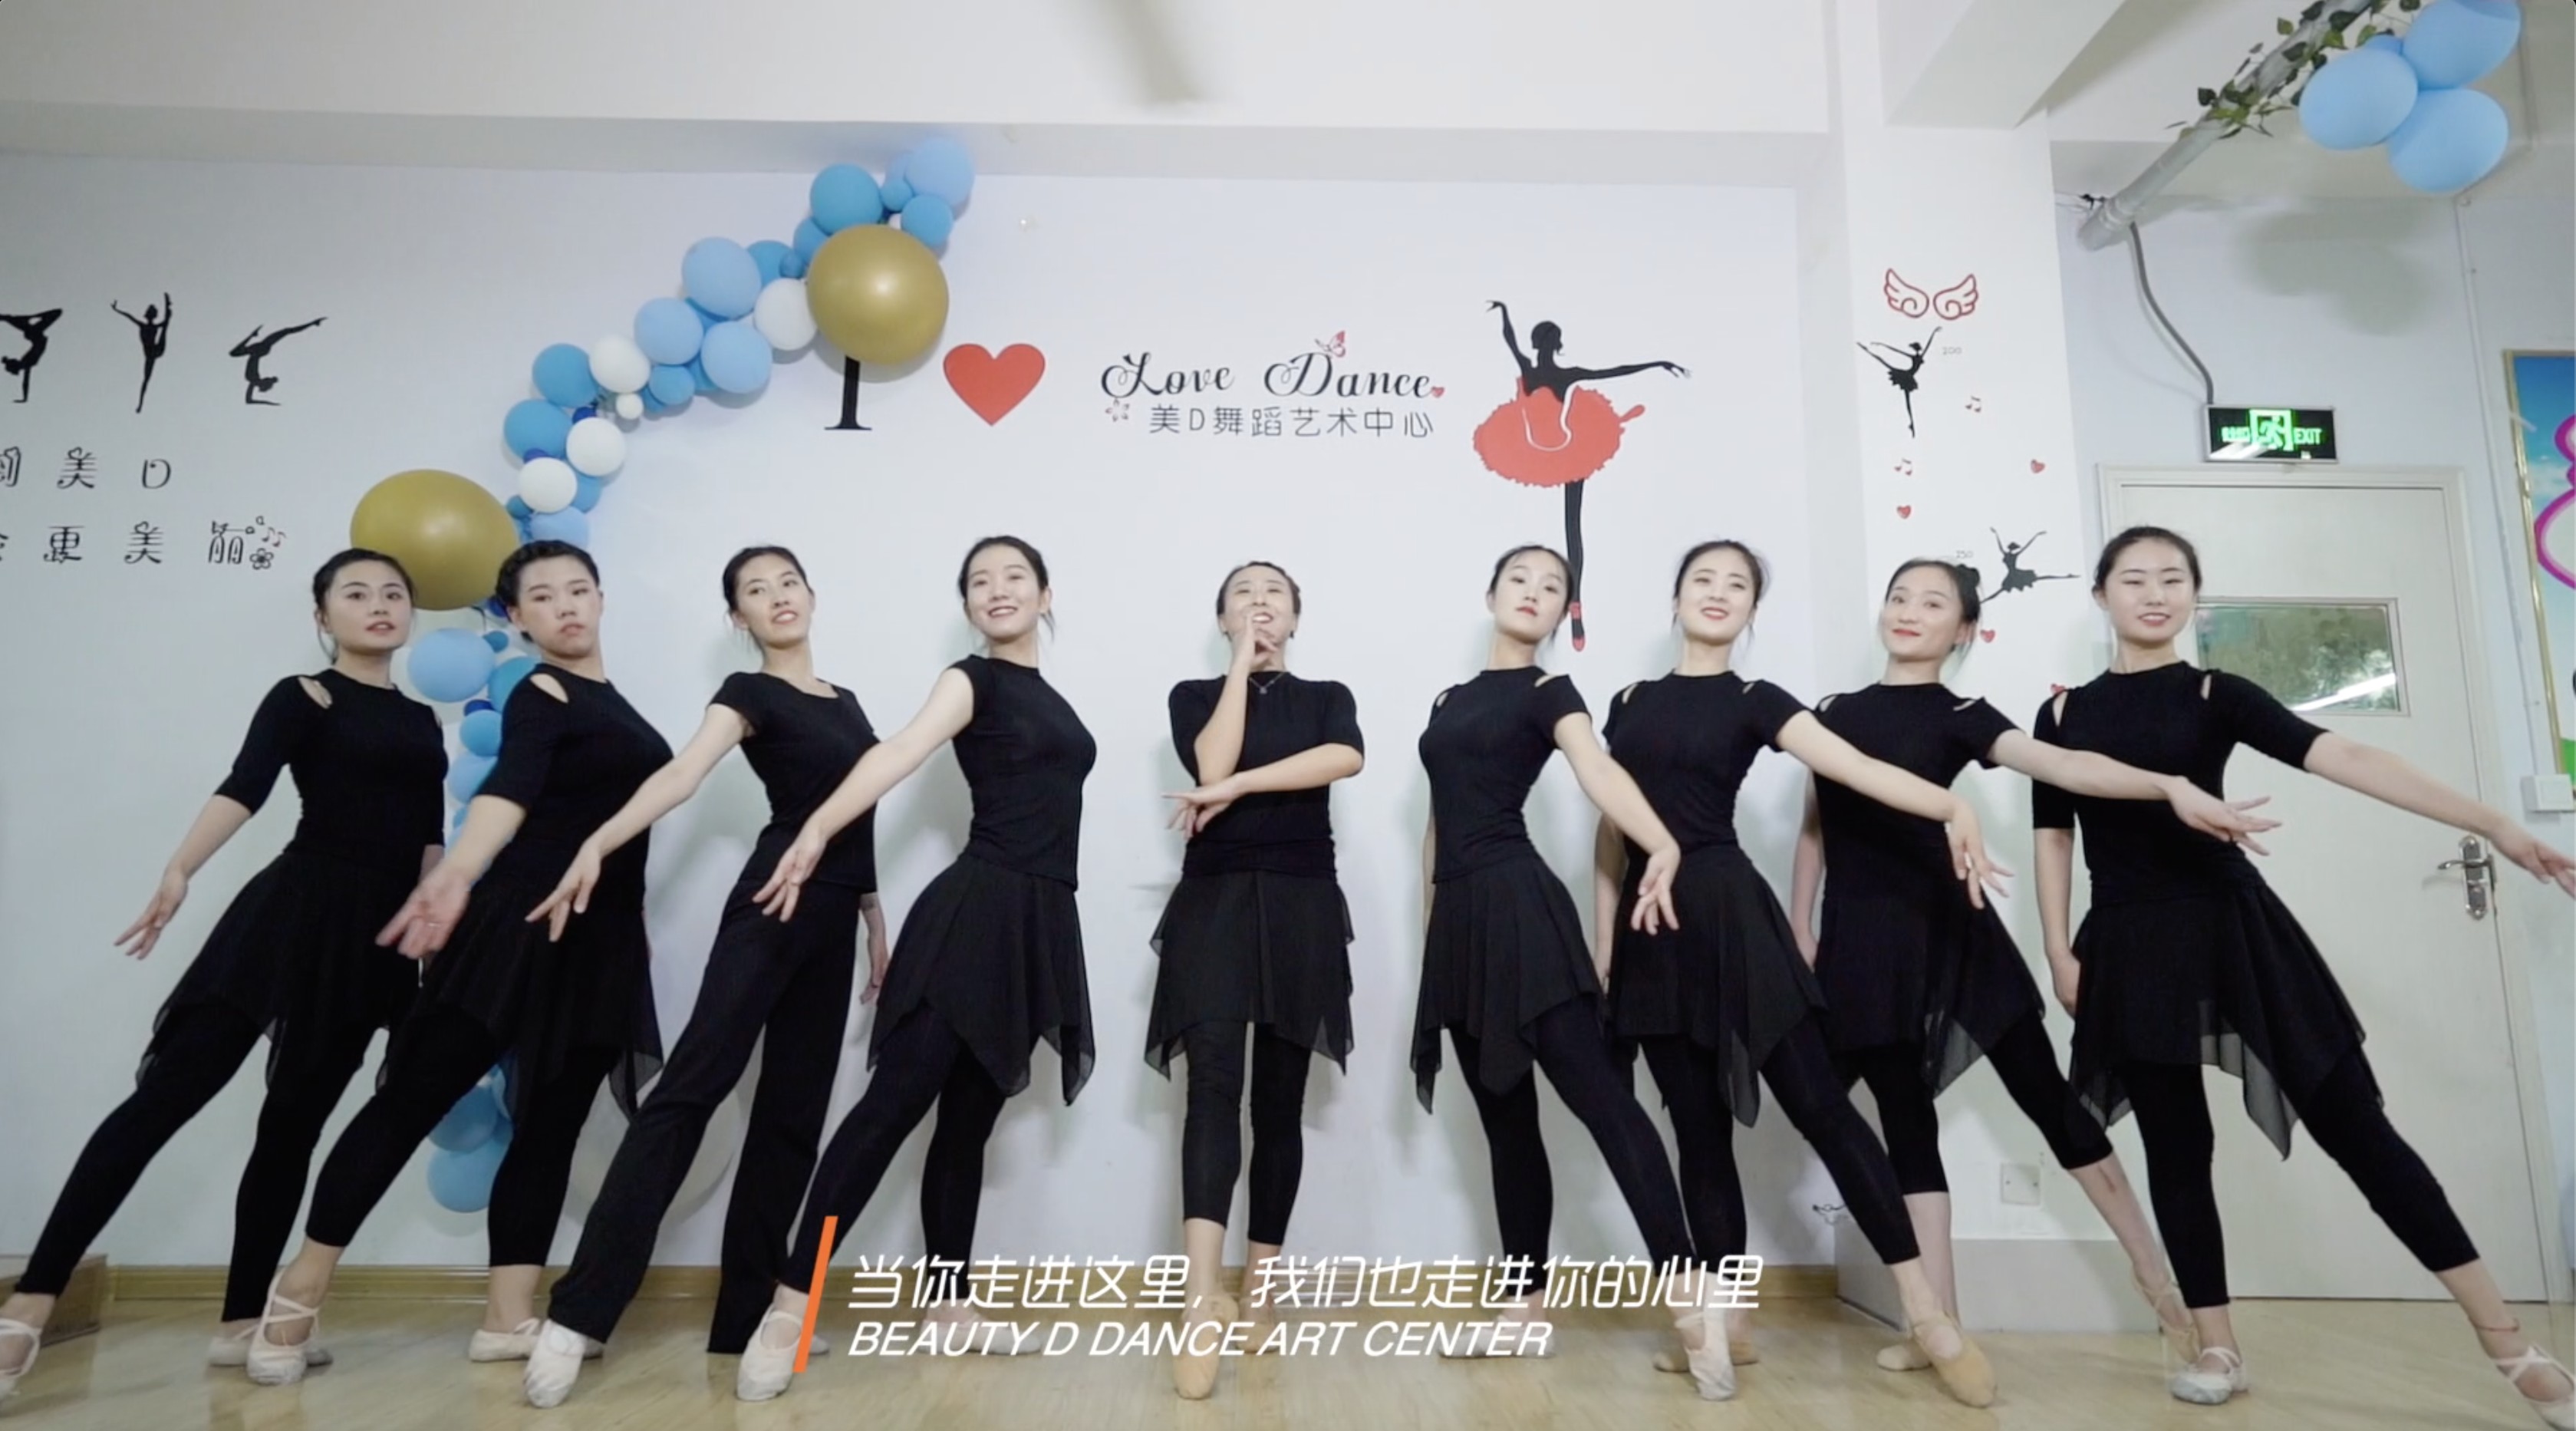 「美D舞蹈艺术中心」宣传片——惠众影视出品 